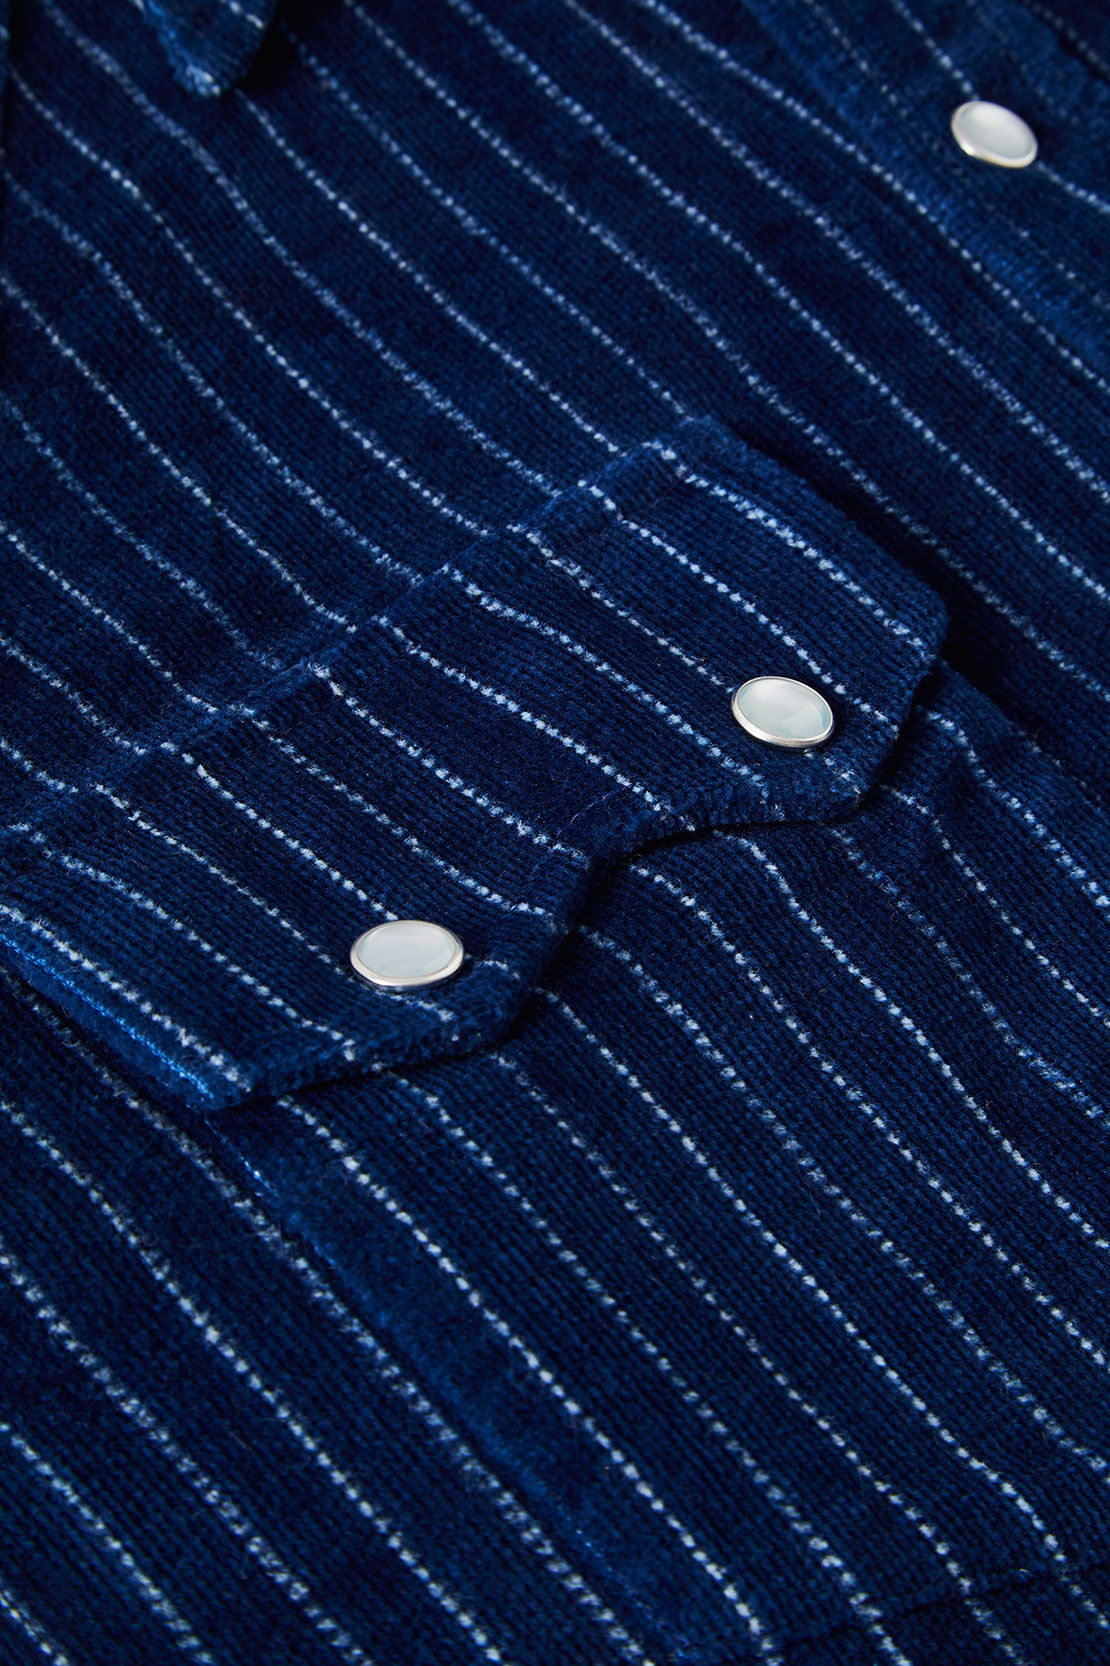 https://www.barbanerastyle.com/wp-content/uploads/2021/09/barbanera-fdp-blue-japanese-wabash-indigo-corduroy-limited-edition-western-shirt-4.jpg